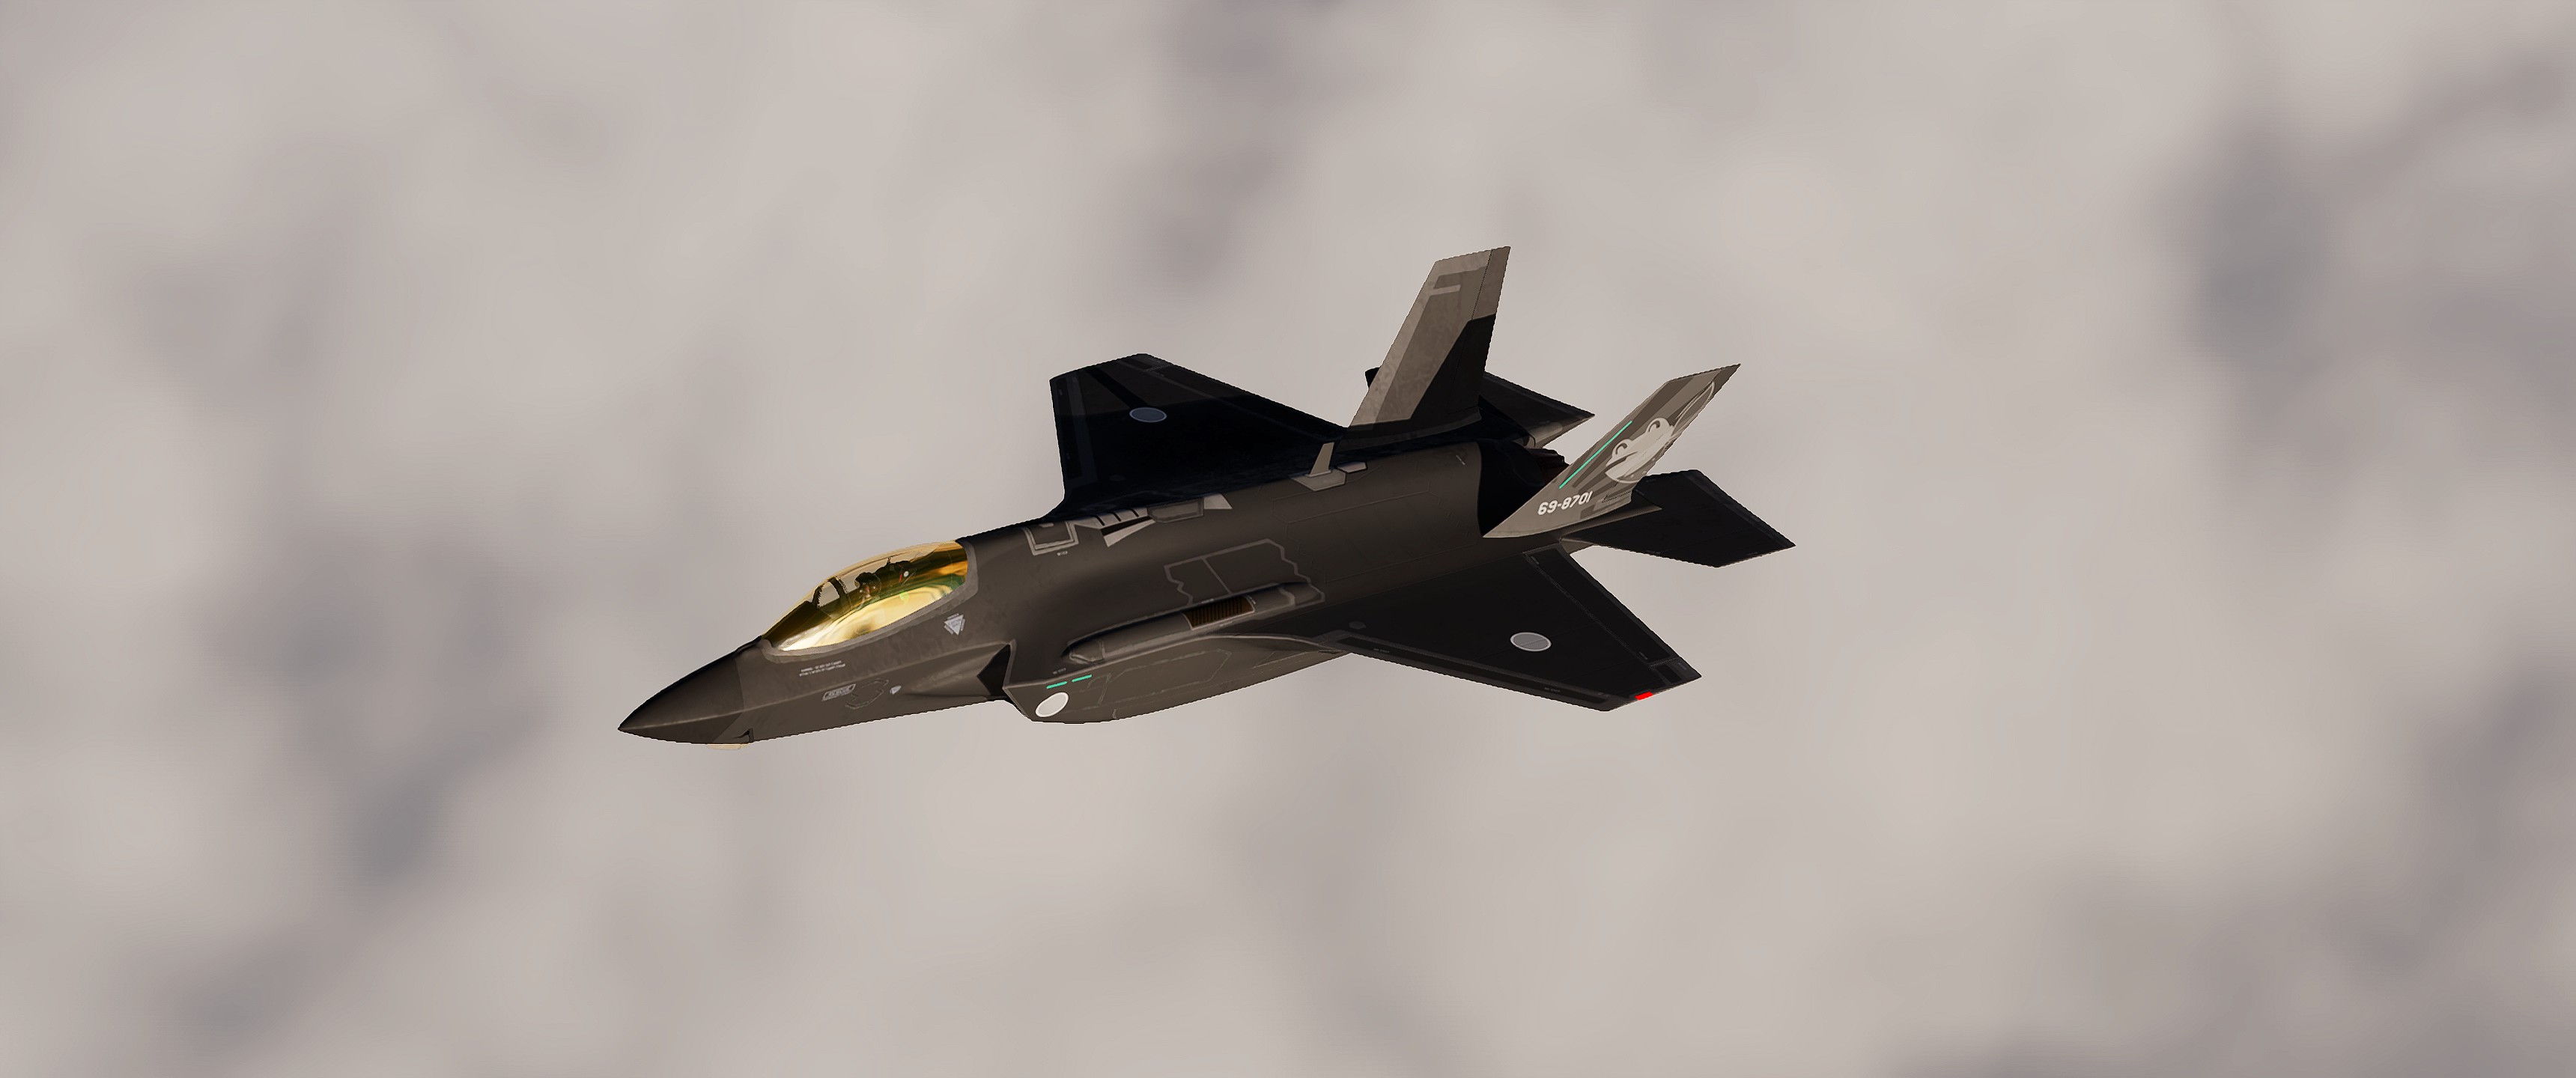 JASDF F-35A (Semi-Fictional)